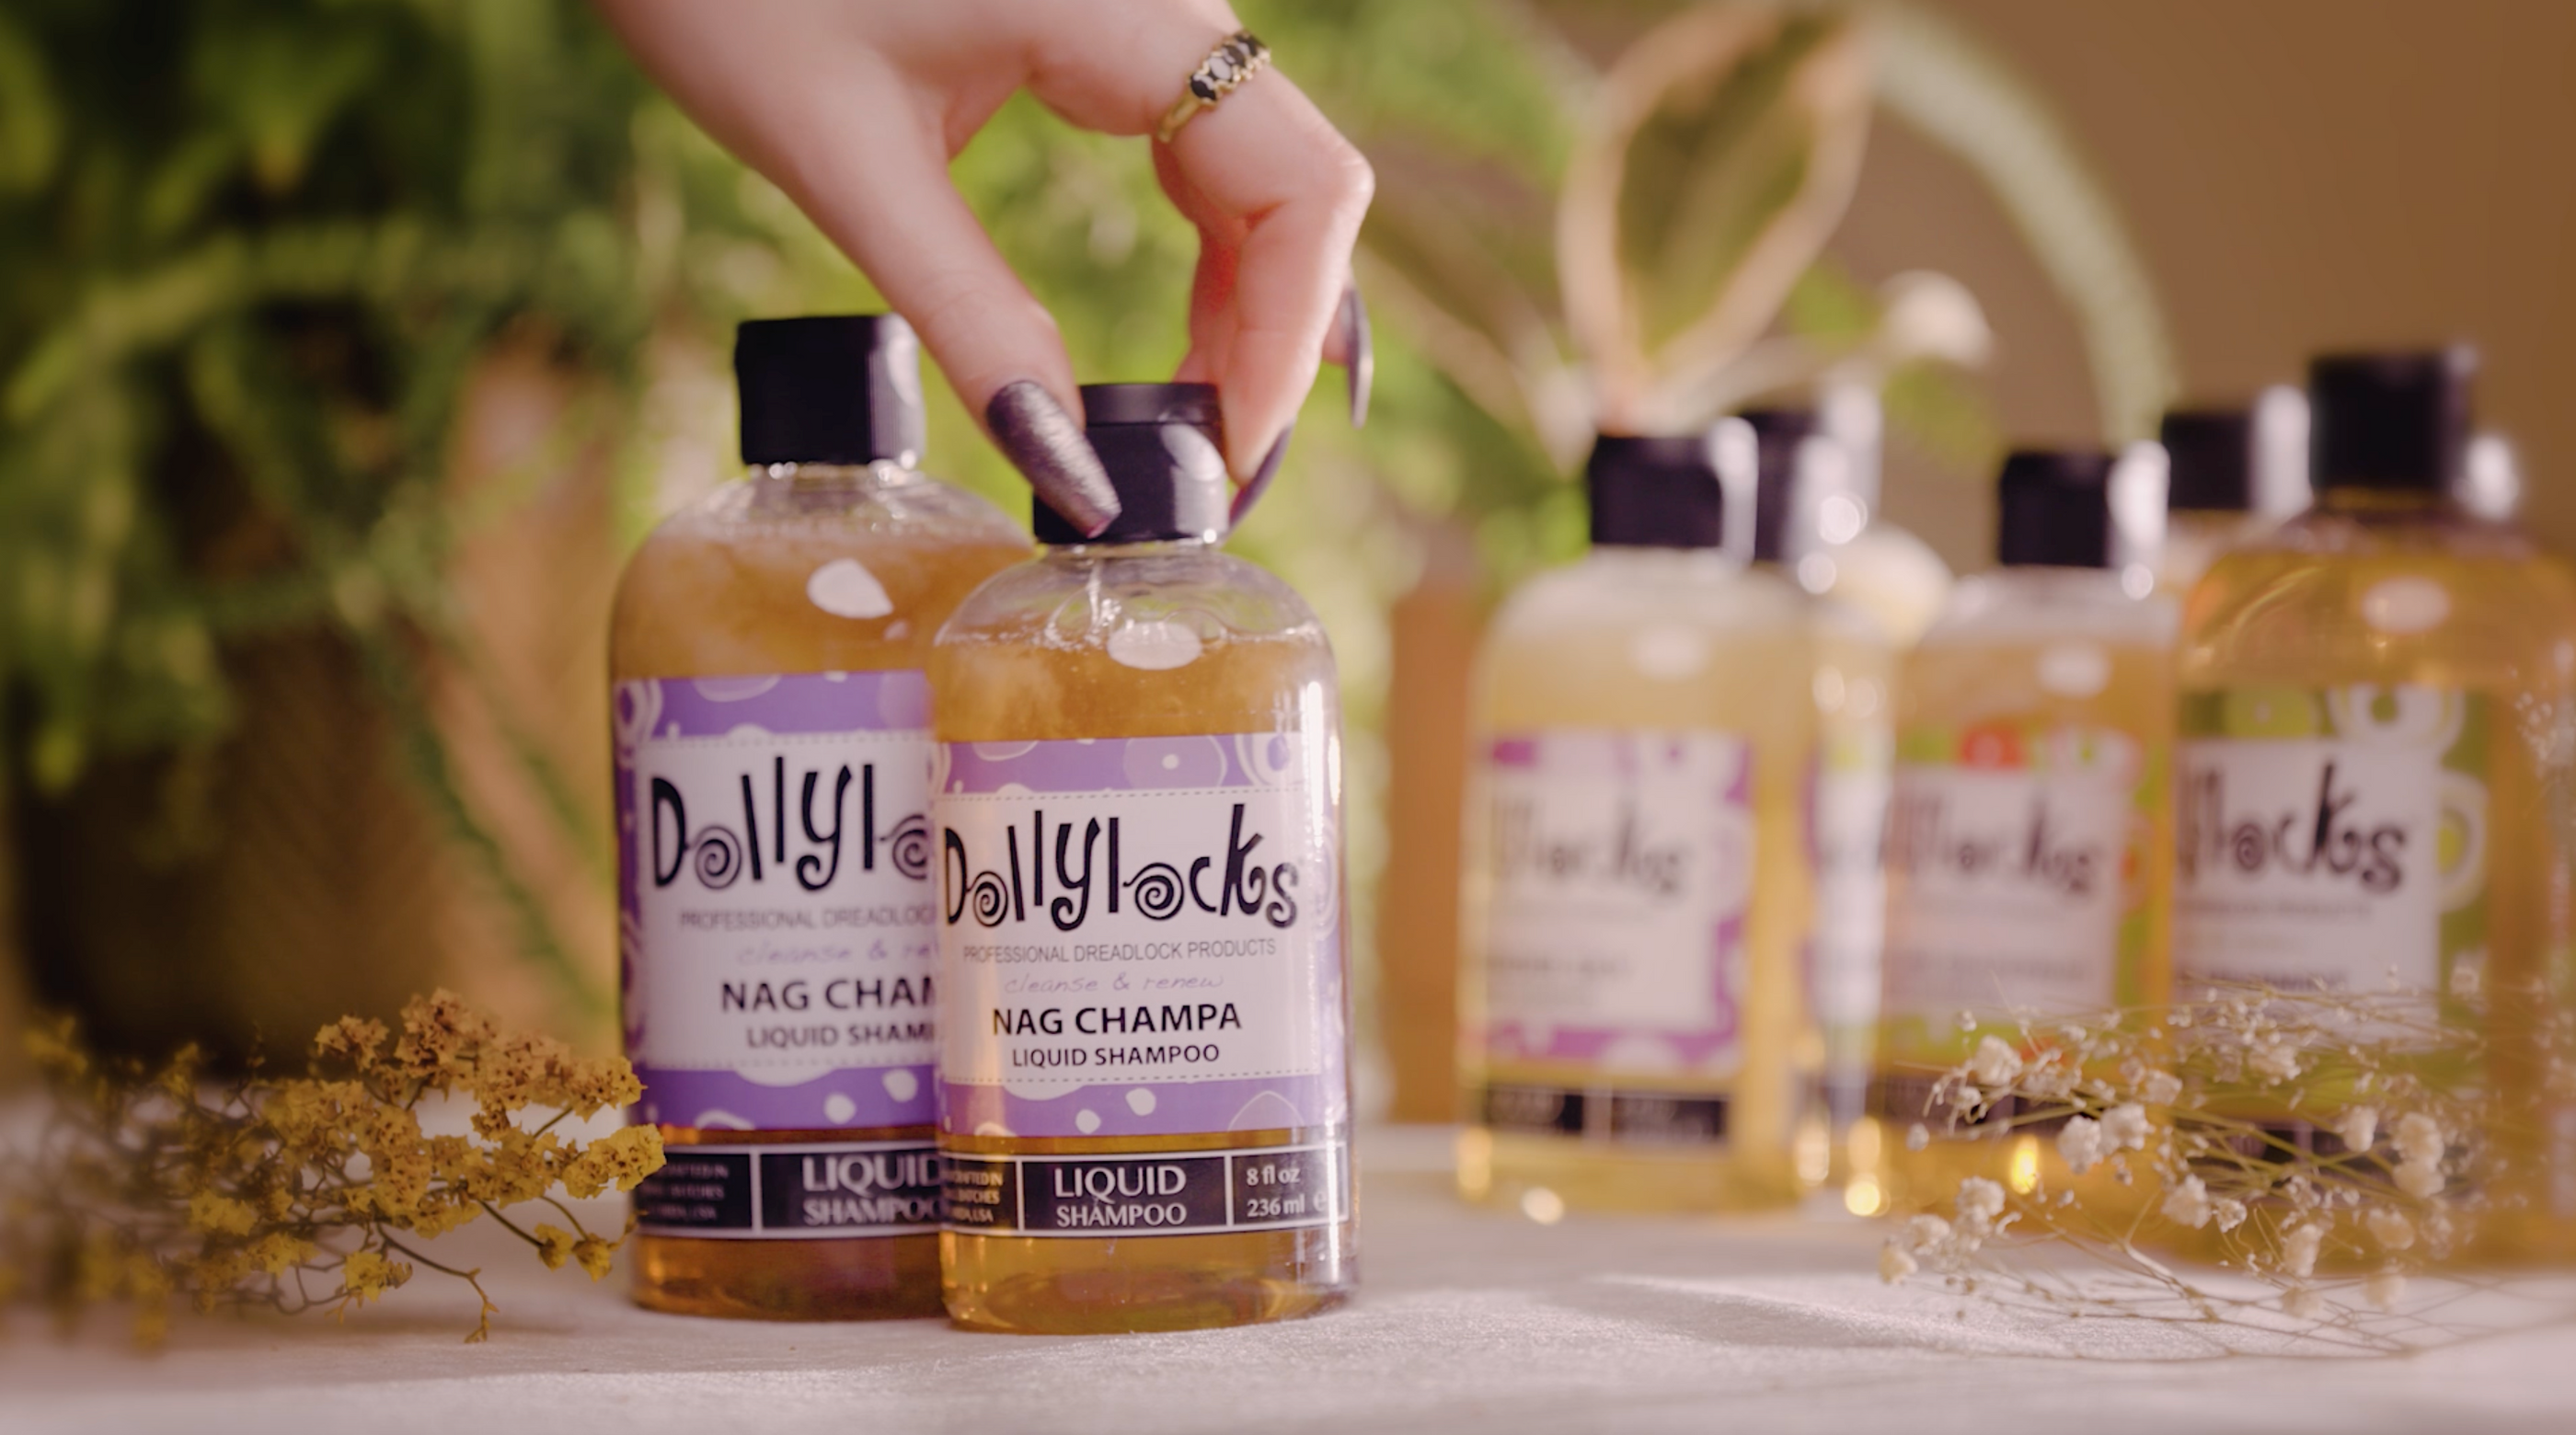 DollyLocks Liquid Dreadlock Shampoo - Buy Your Dreadlock Shampoo Here!